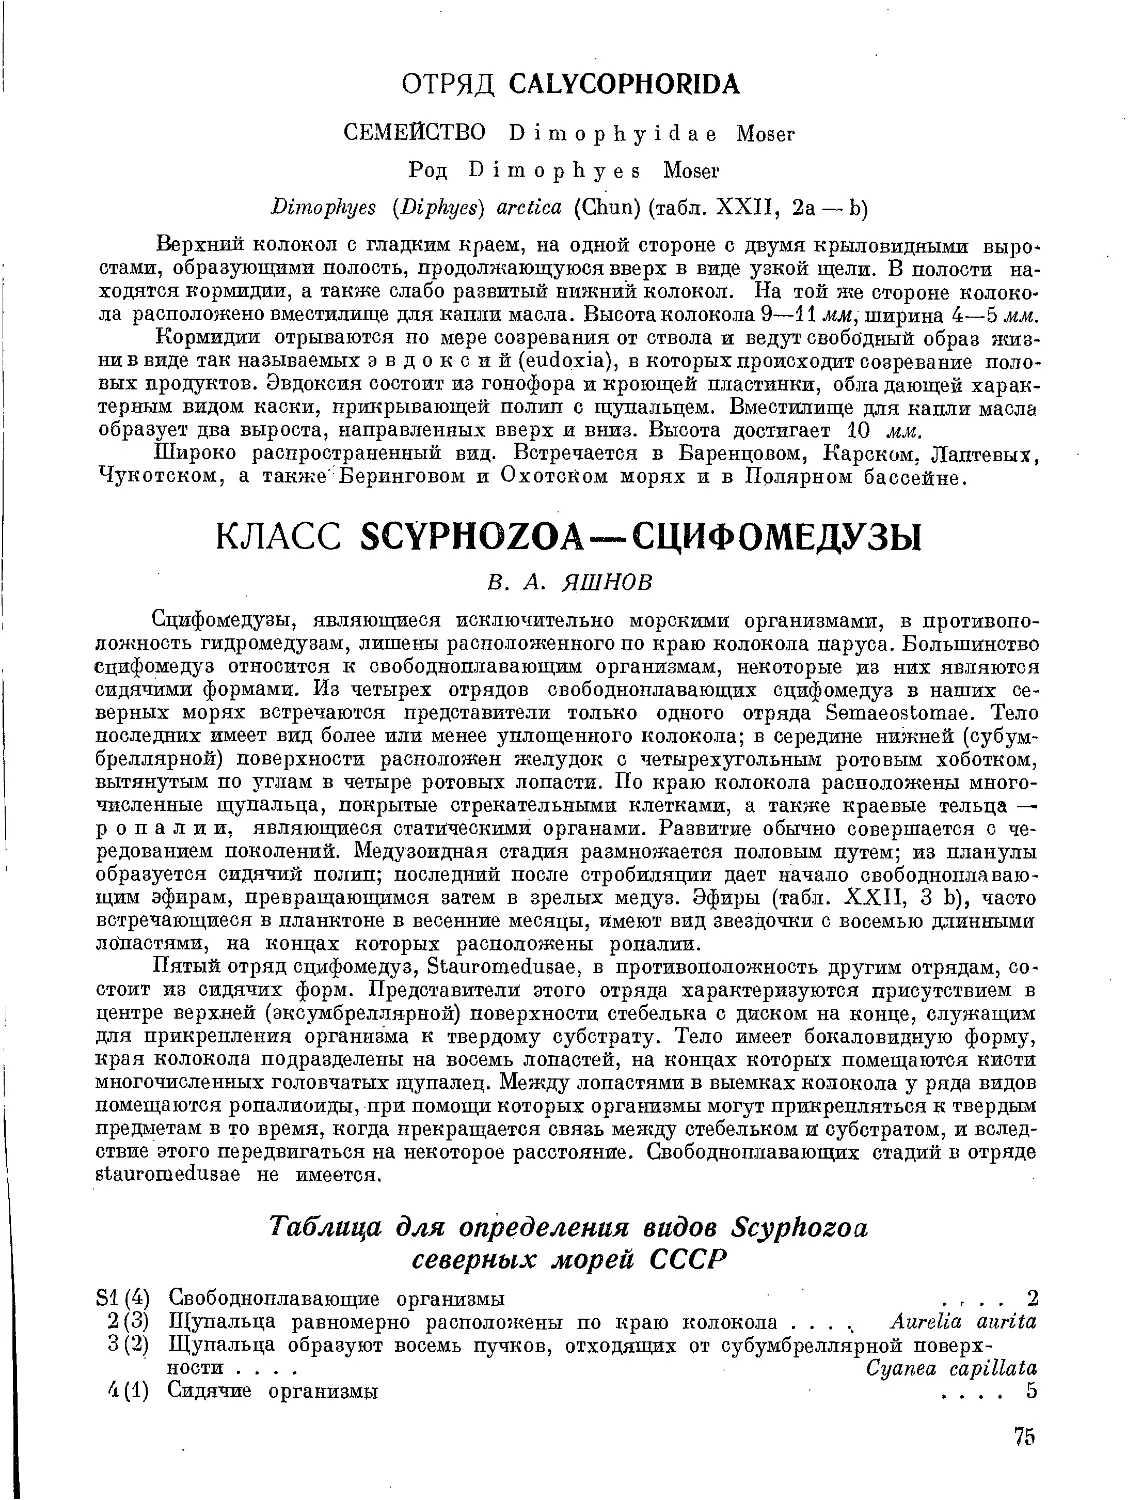 Класс Scyphozoa— Сцифомедузы